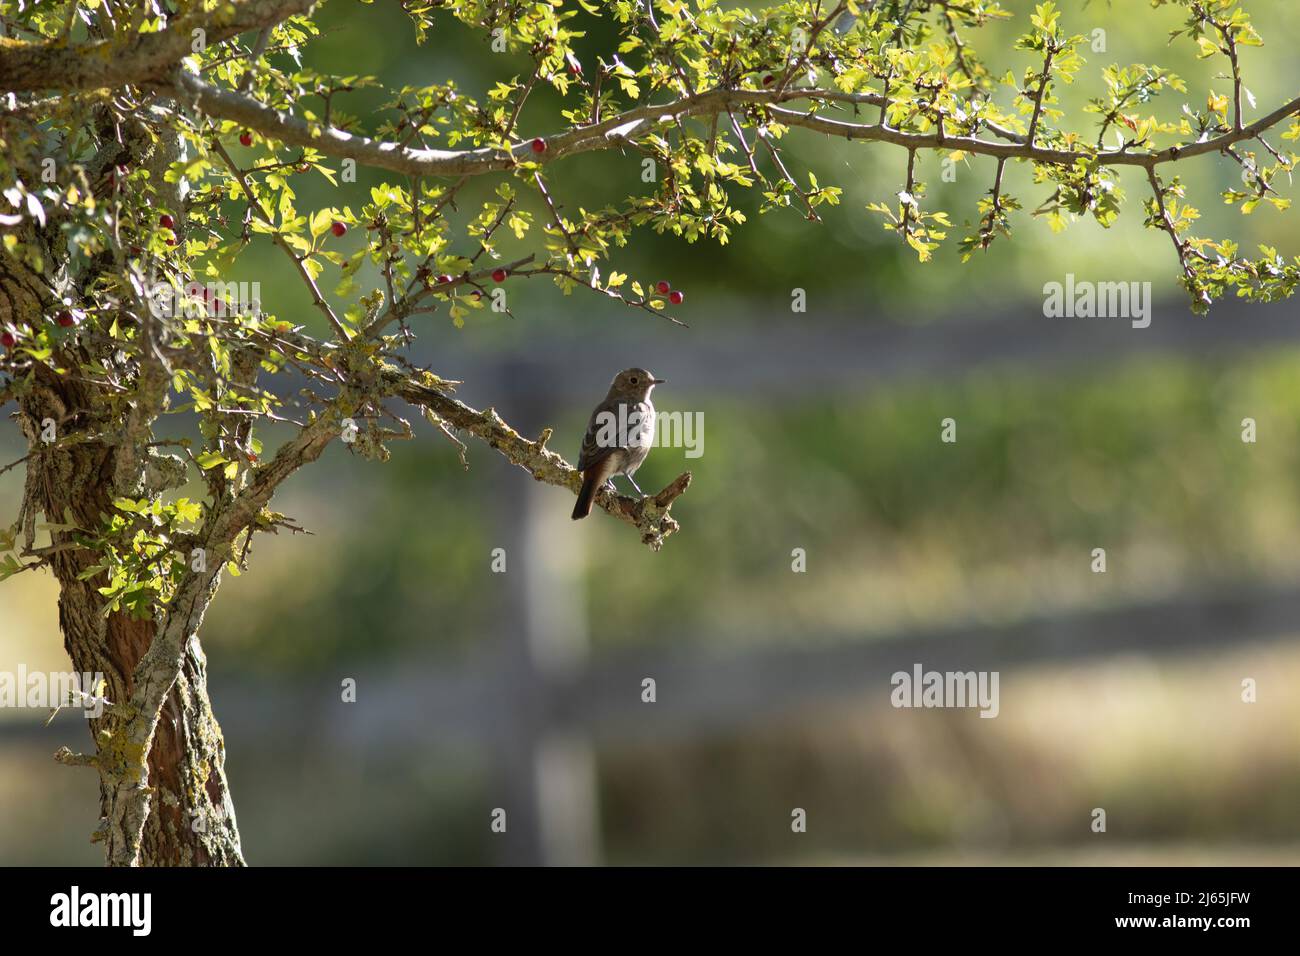 Un oiseau sur une branche dans un cuadro de verdure Foto de stock